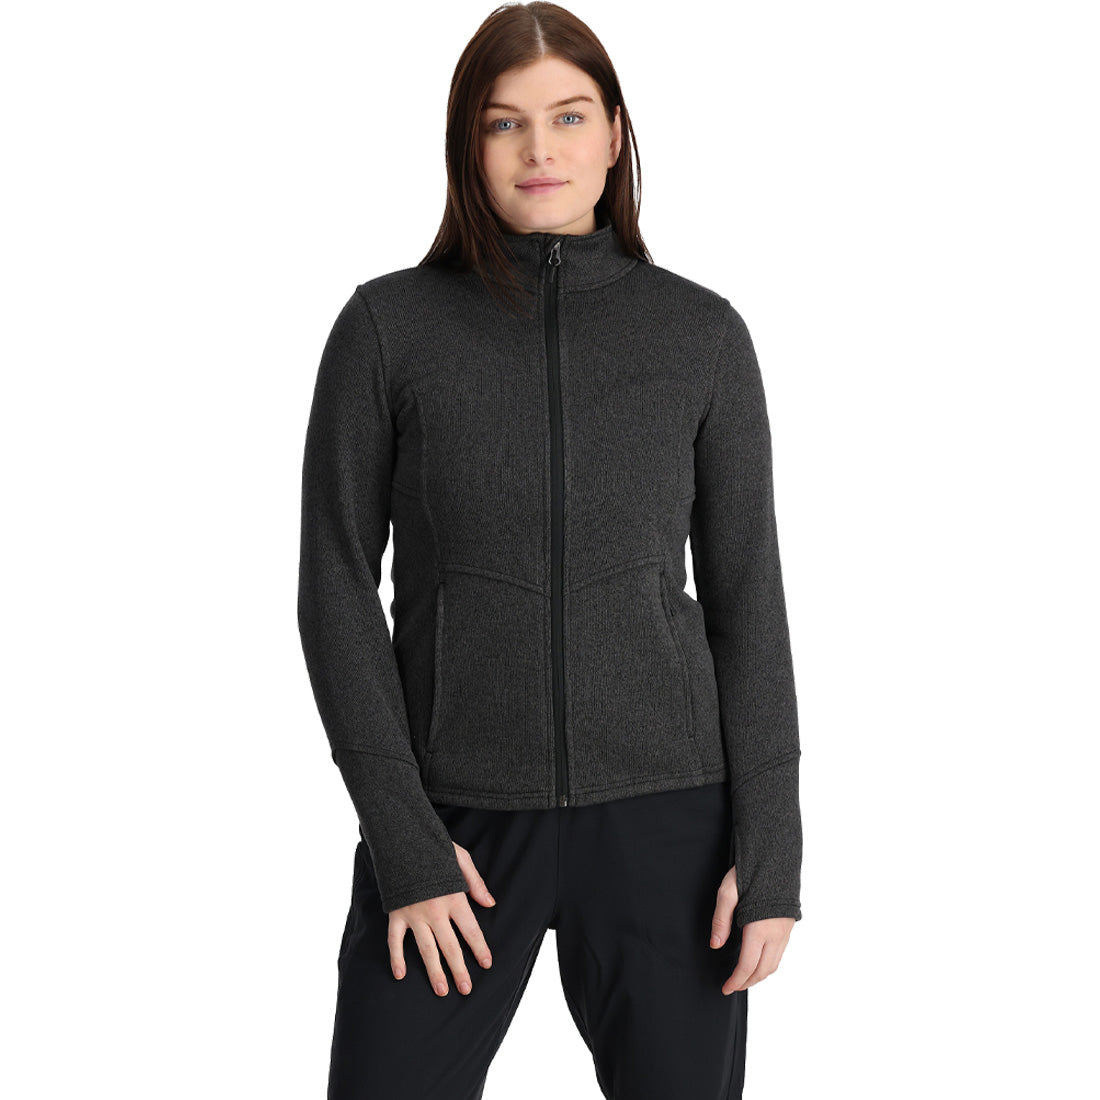 Spyder Soar Full Zip Fleece Jacket - Women's